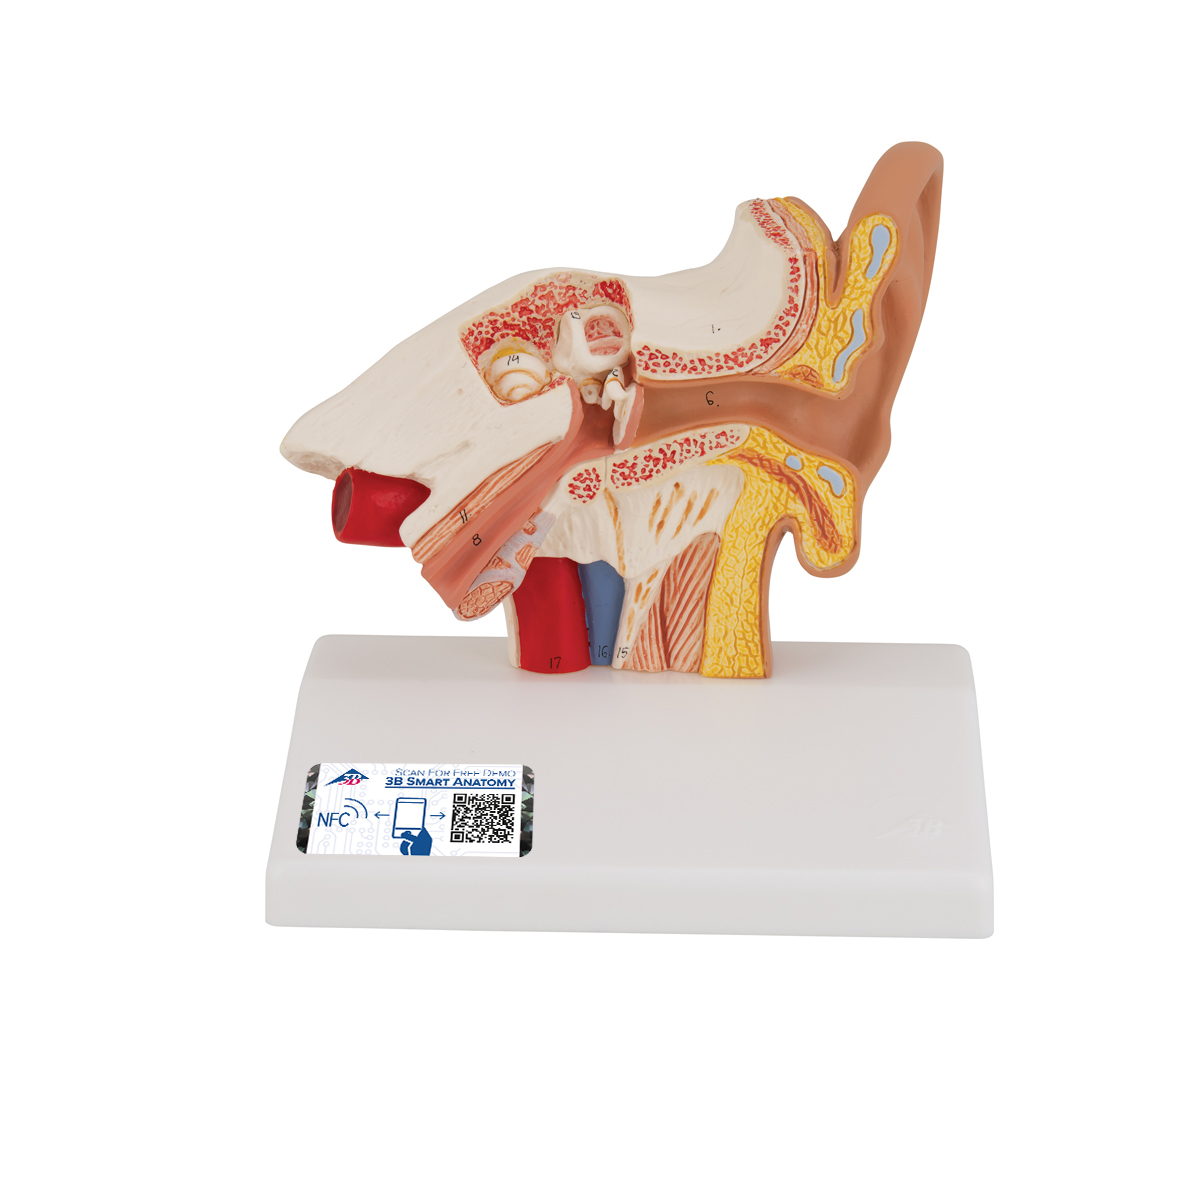 Schreibtischmodell des Ohrs, 1,5-fache Größe - 3B Smart Anatomy, Bestellnummer 1000252, E12, 3B Scientific